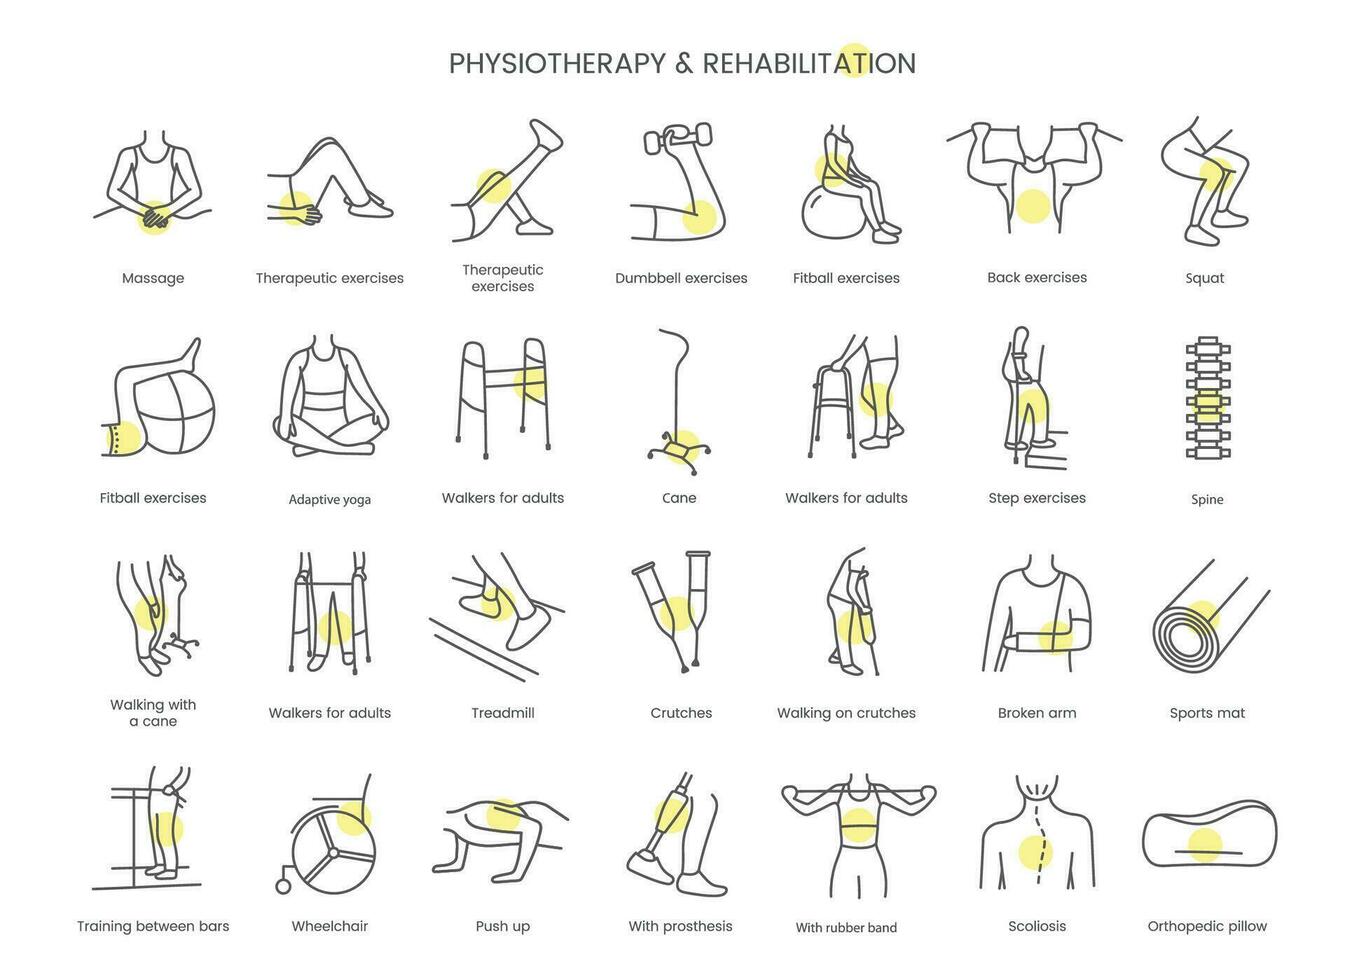 conjunto de íconos fisioterapia y rehabilitación, pesa ejercicios, espalda ejercicios, con caucho banda, espina y fitball ejercicios, adaptado yoga, empujar arriba y ponerse en cuclillas. lineal vector ilustración